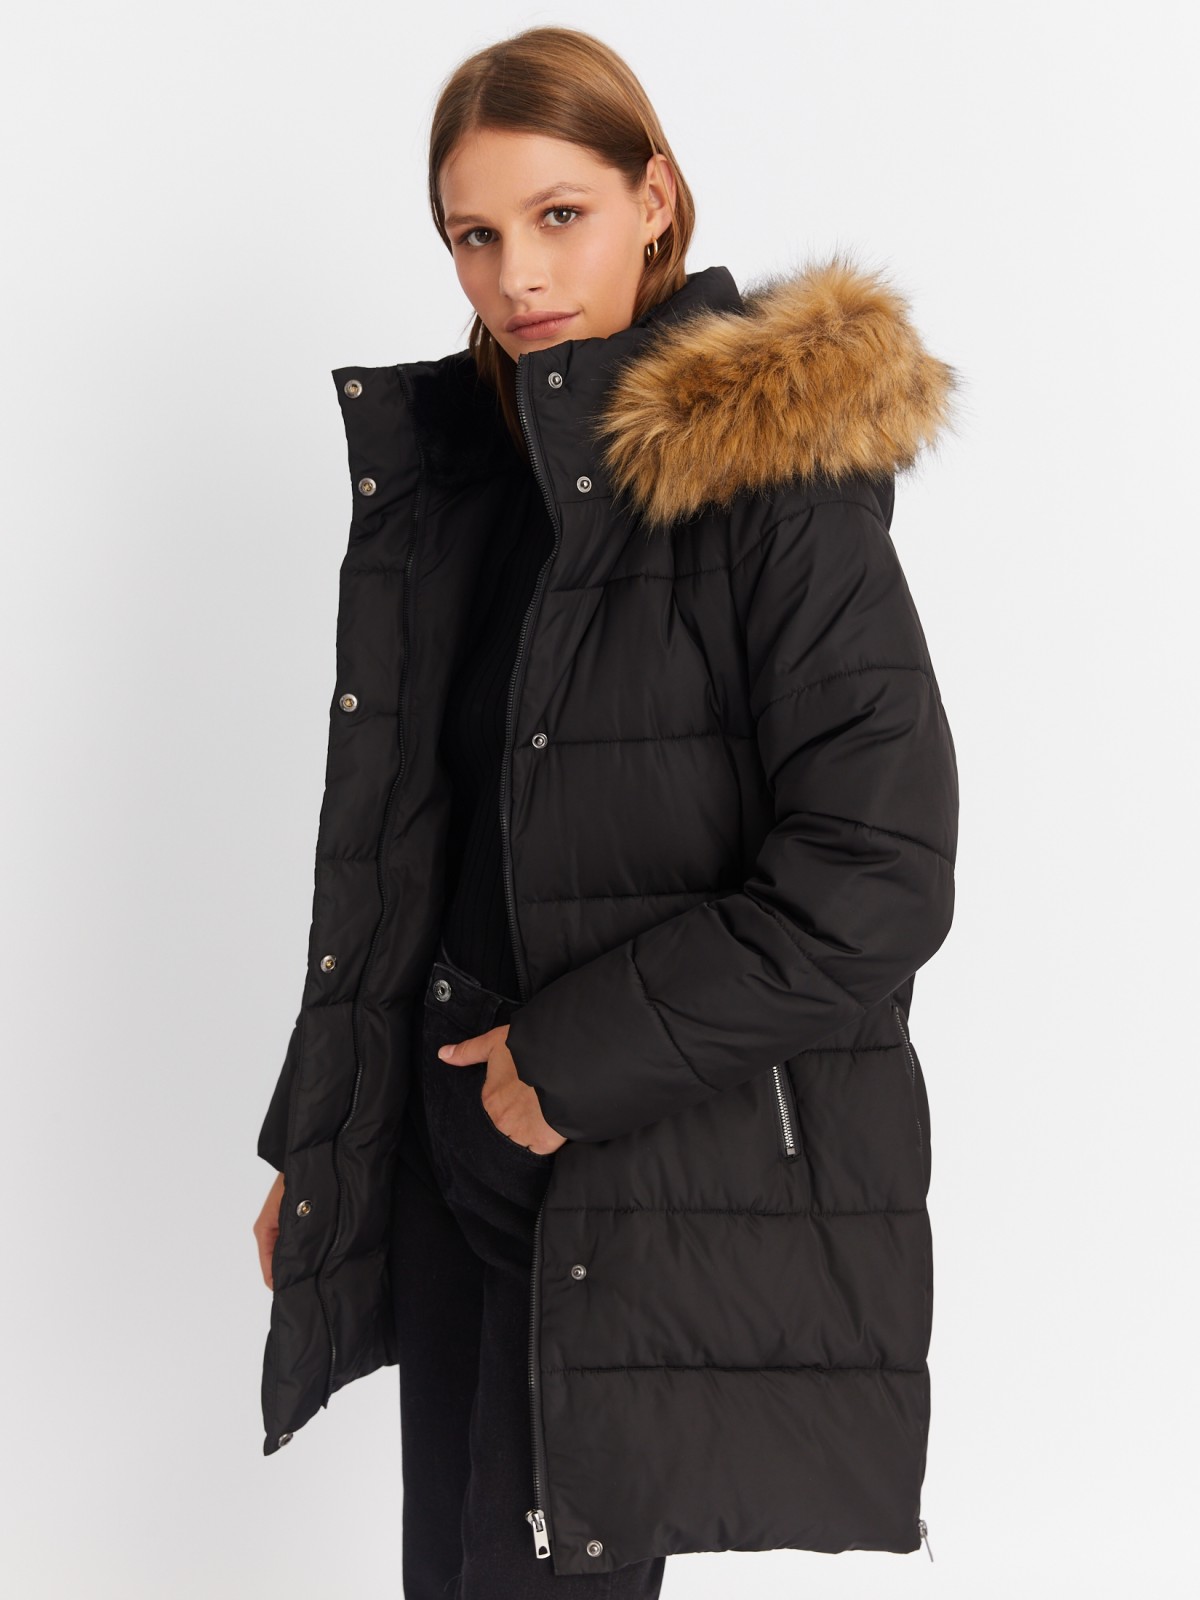 Тёплая куртка-пальто с капюшоном и боковыми шлицами на молниях zolla 022425212014, цвет черный, размер XS - фото 1